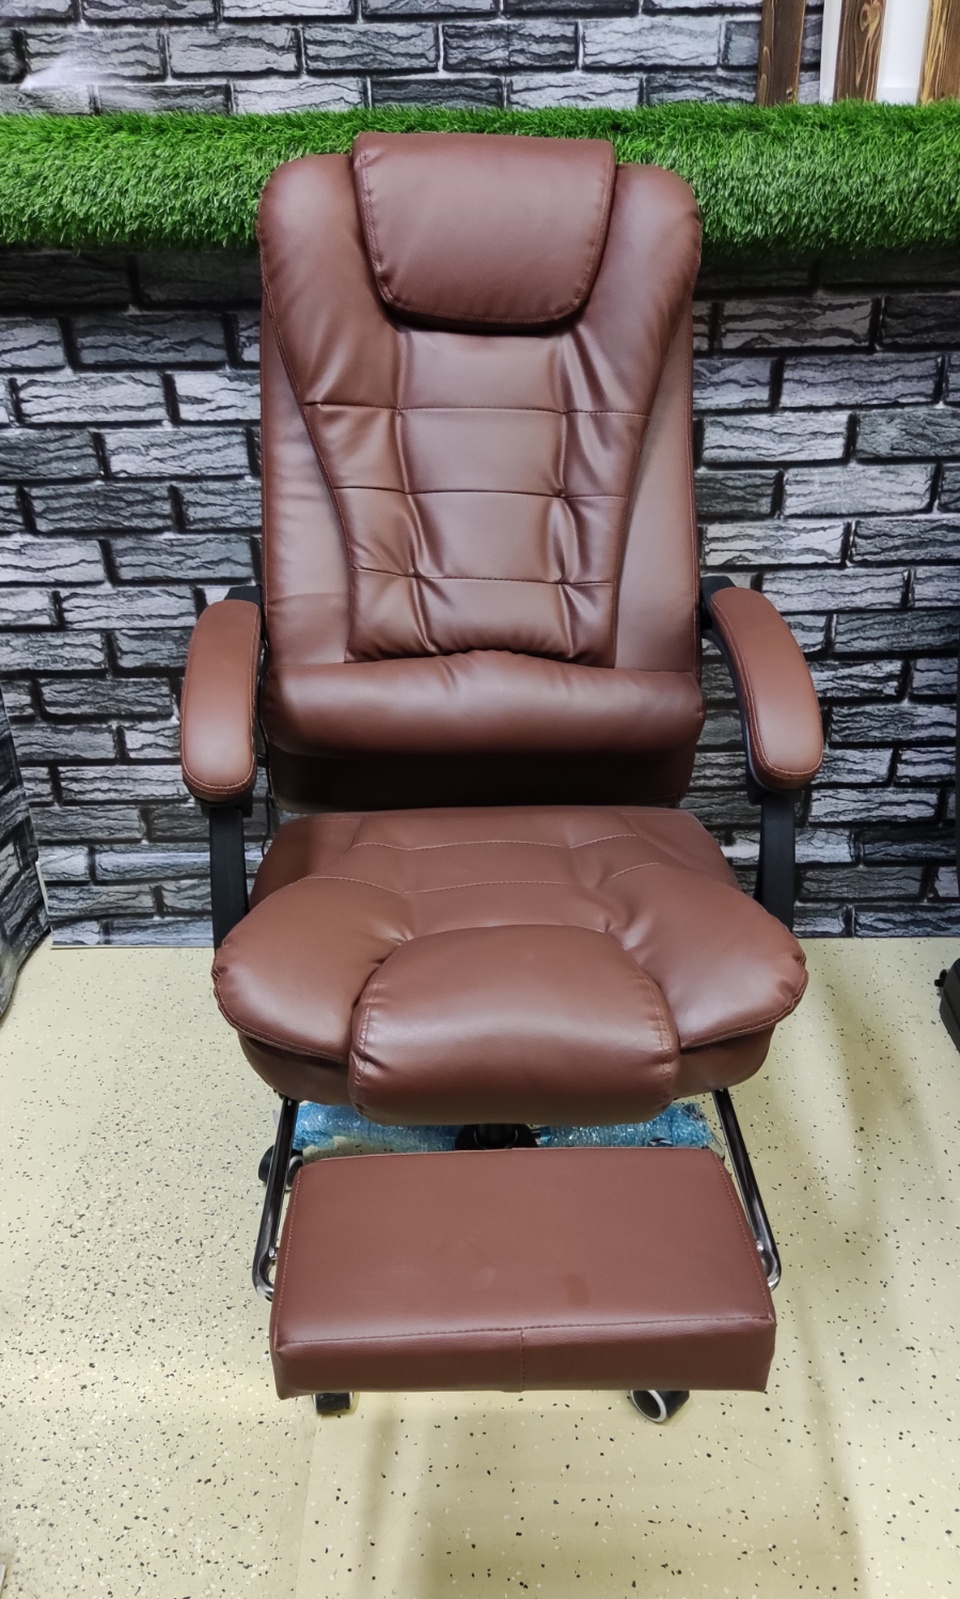 Кресло офисное со встроенным вибромассажем - 14 000 ₽, заказать онлайн.